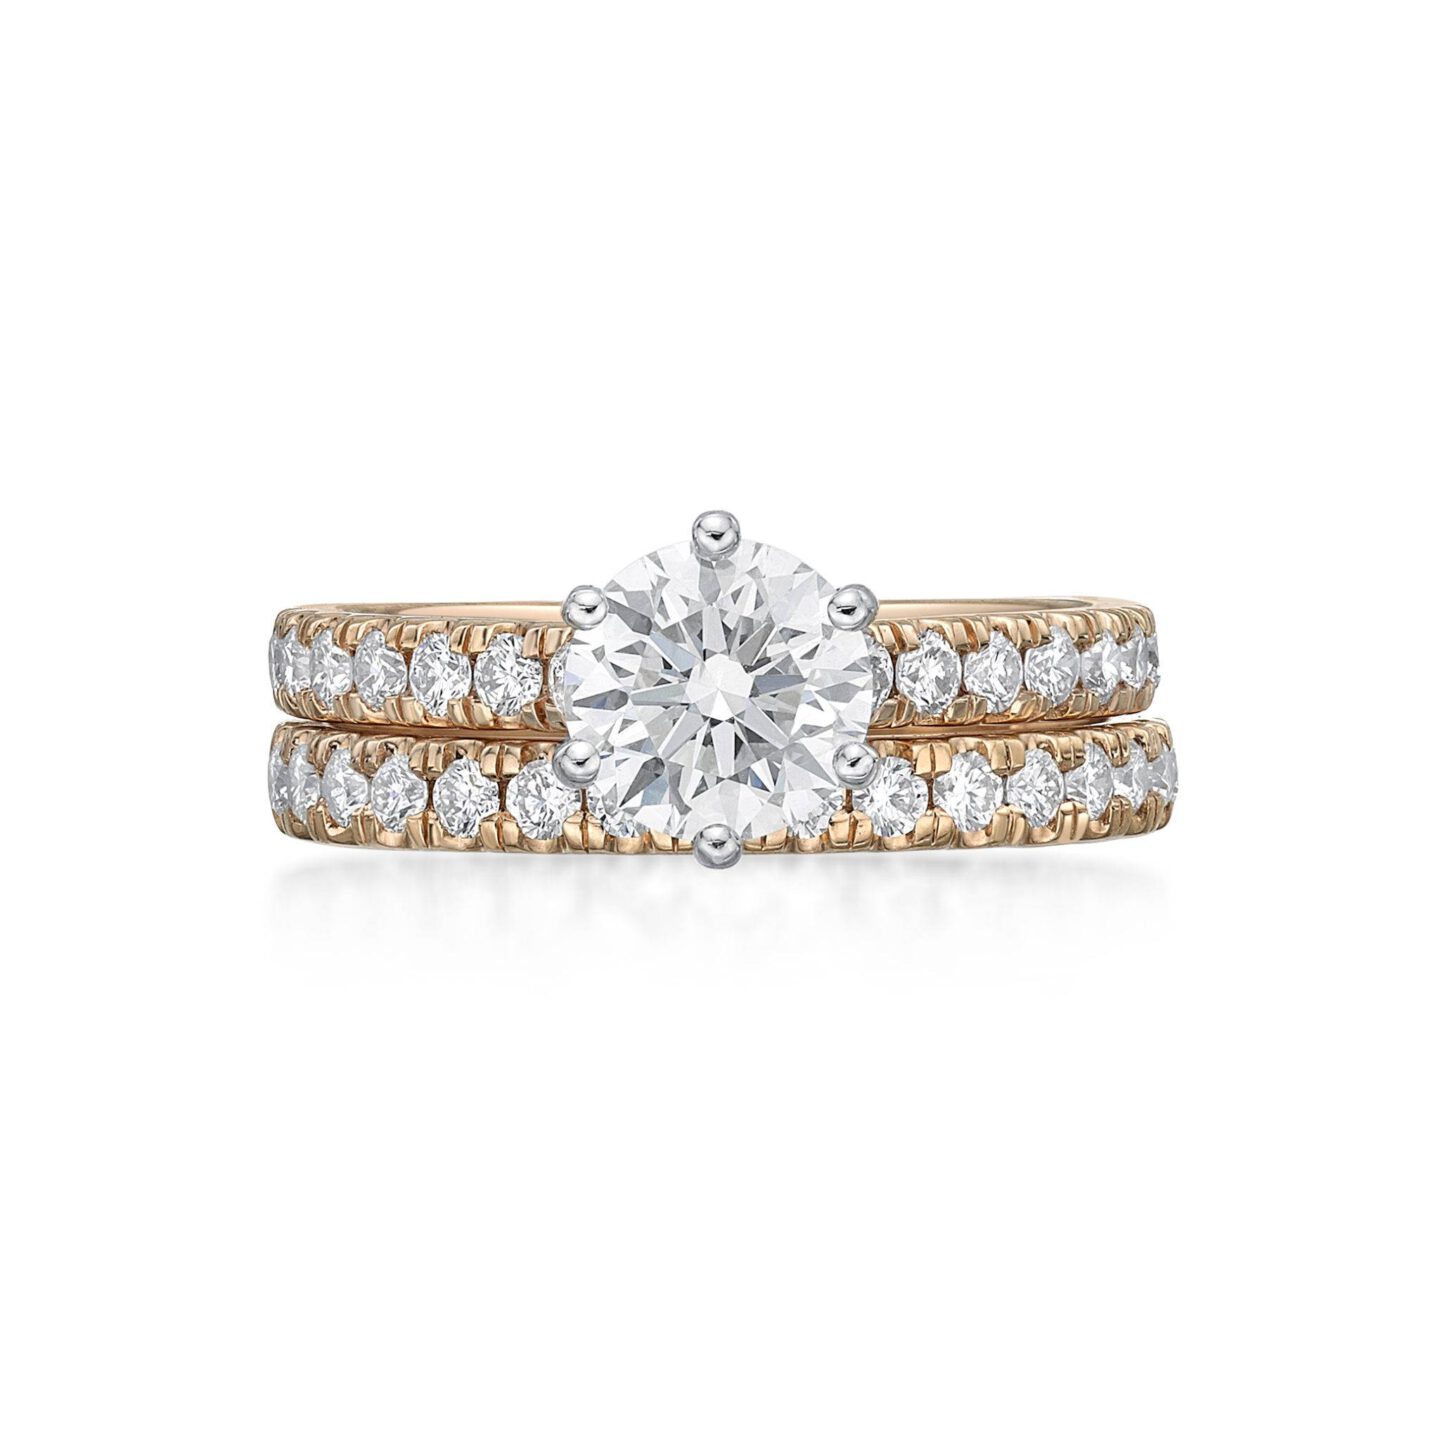 Amara – Round Brilliant Cut Diamond Engagement Ring